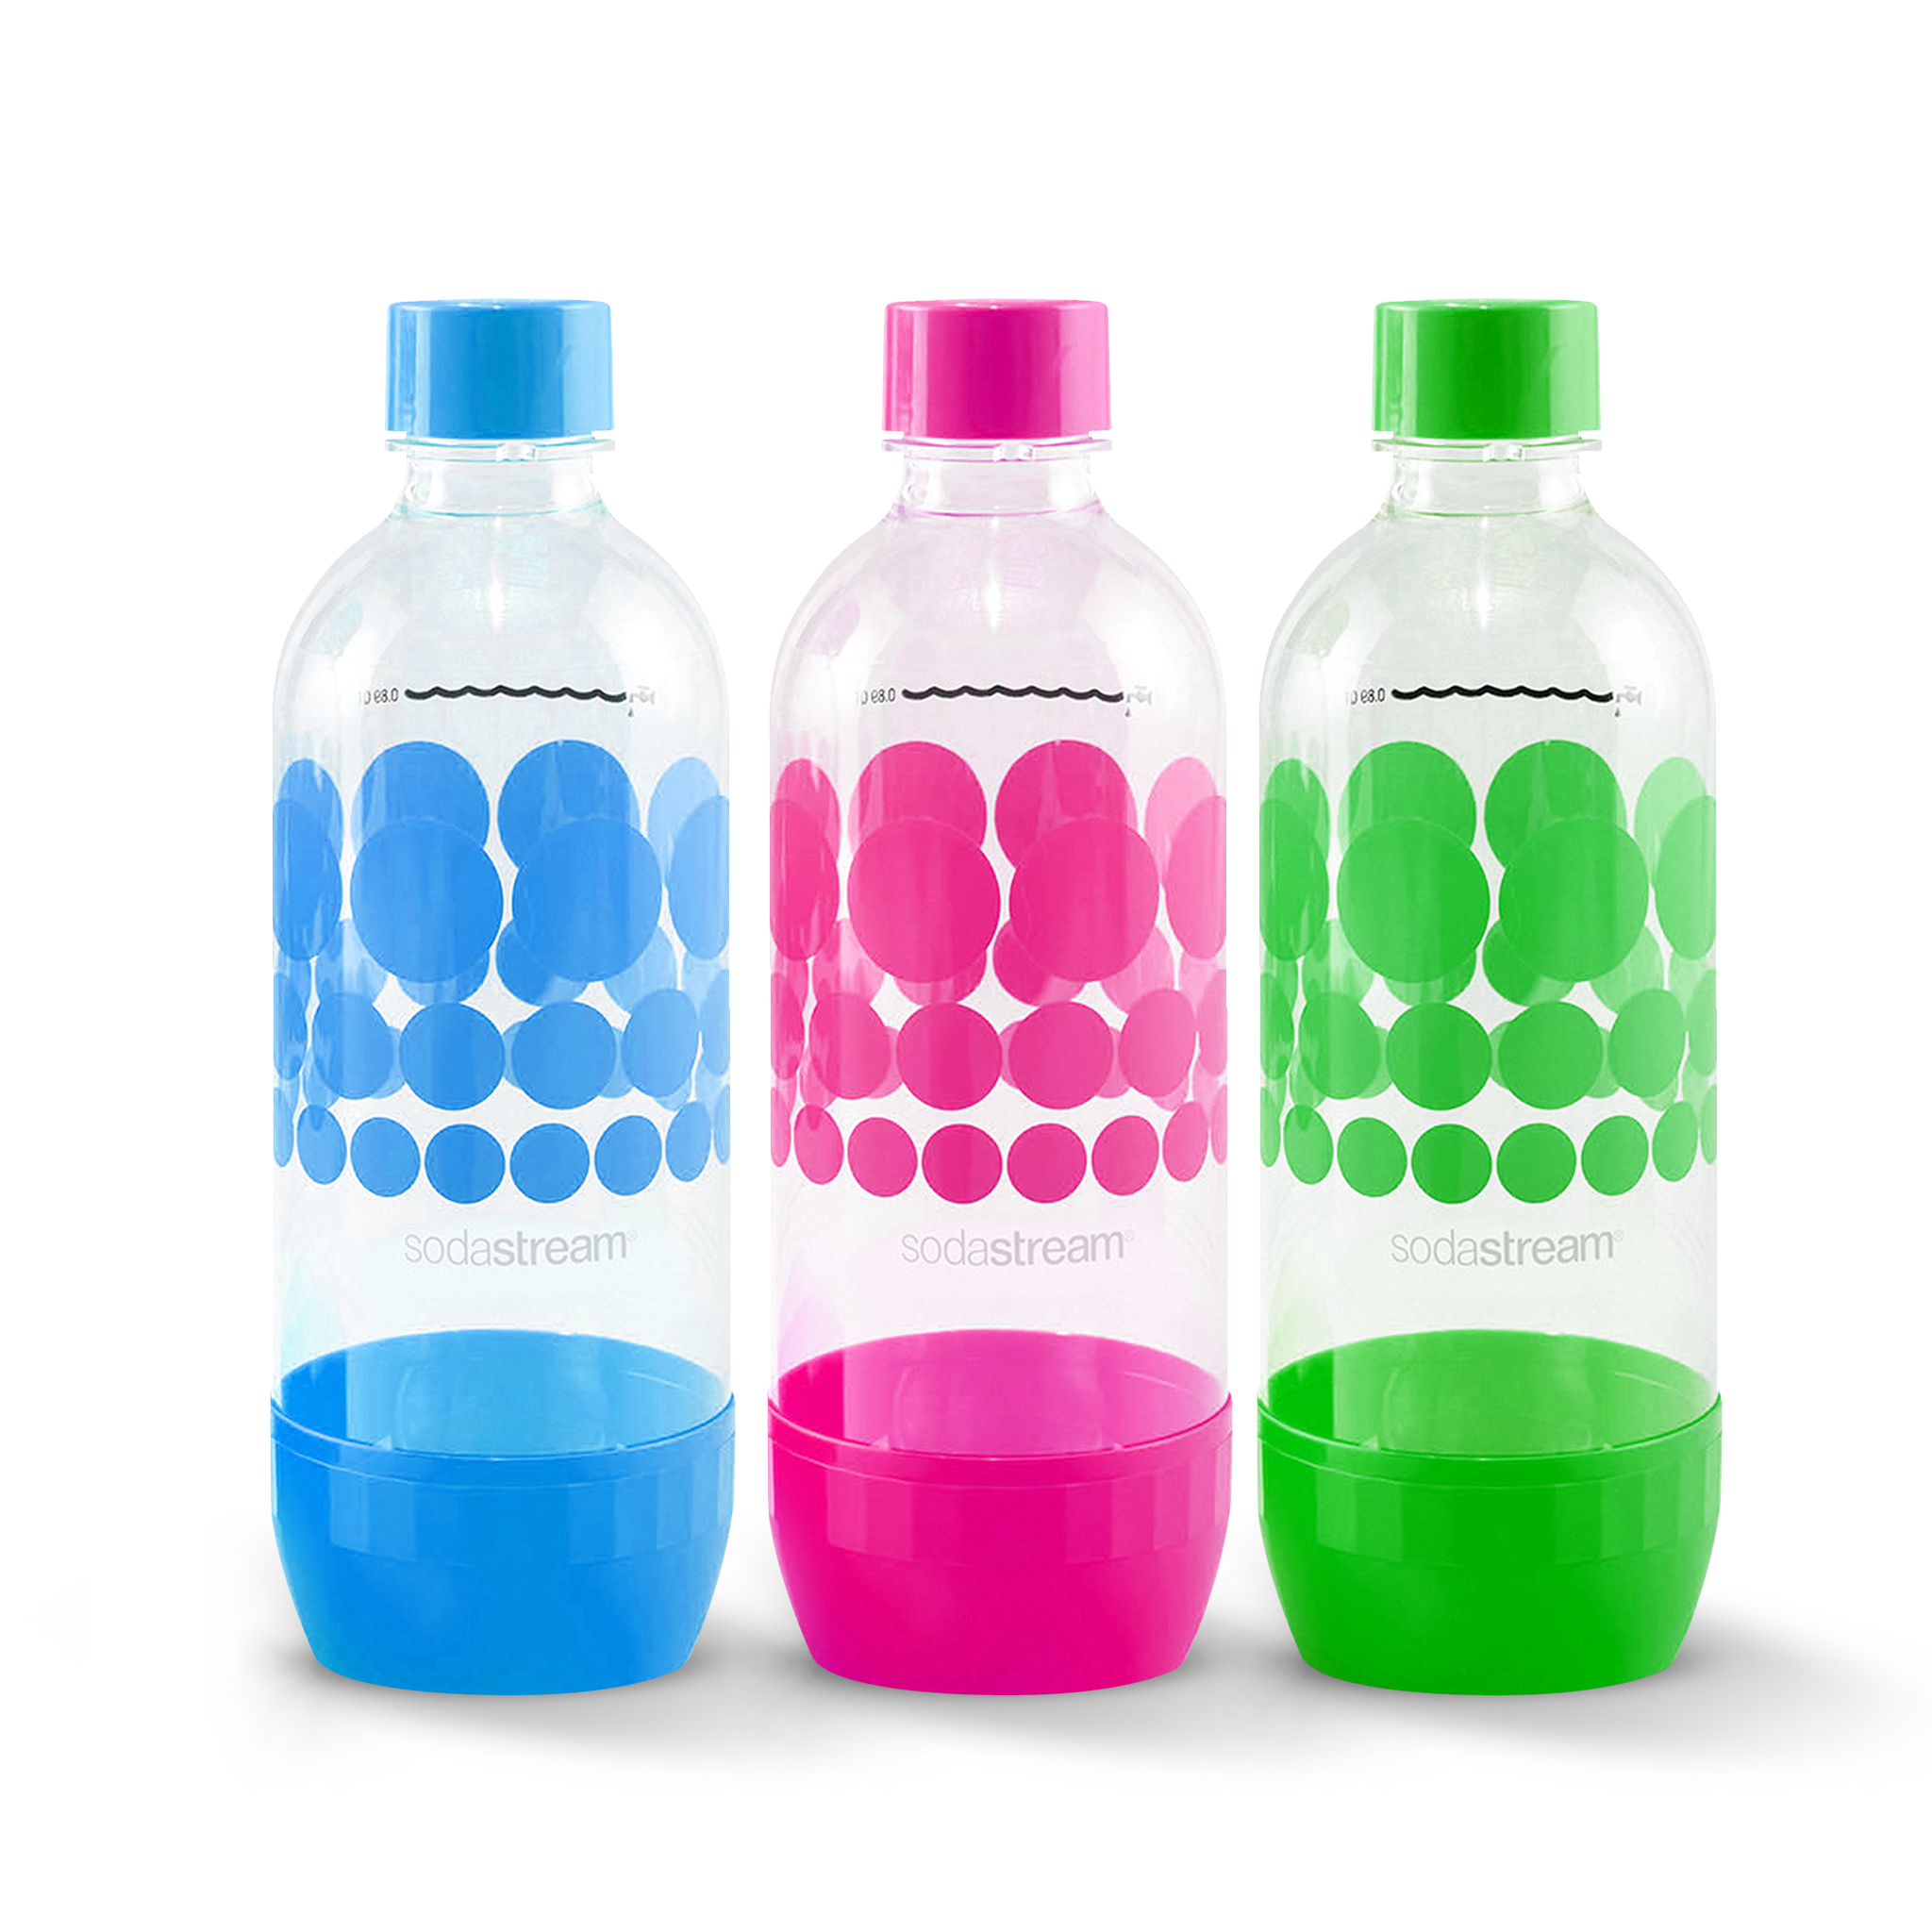 שלישיית בקבוקי פלסטיק בעיצוב נקודות בנפח 1 ליטר*